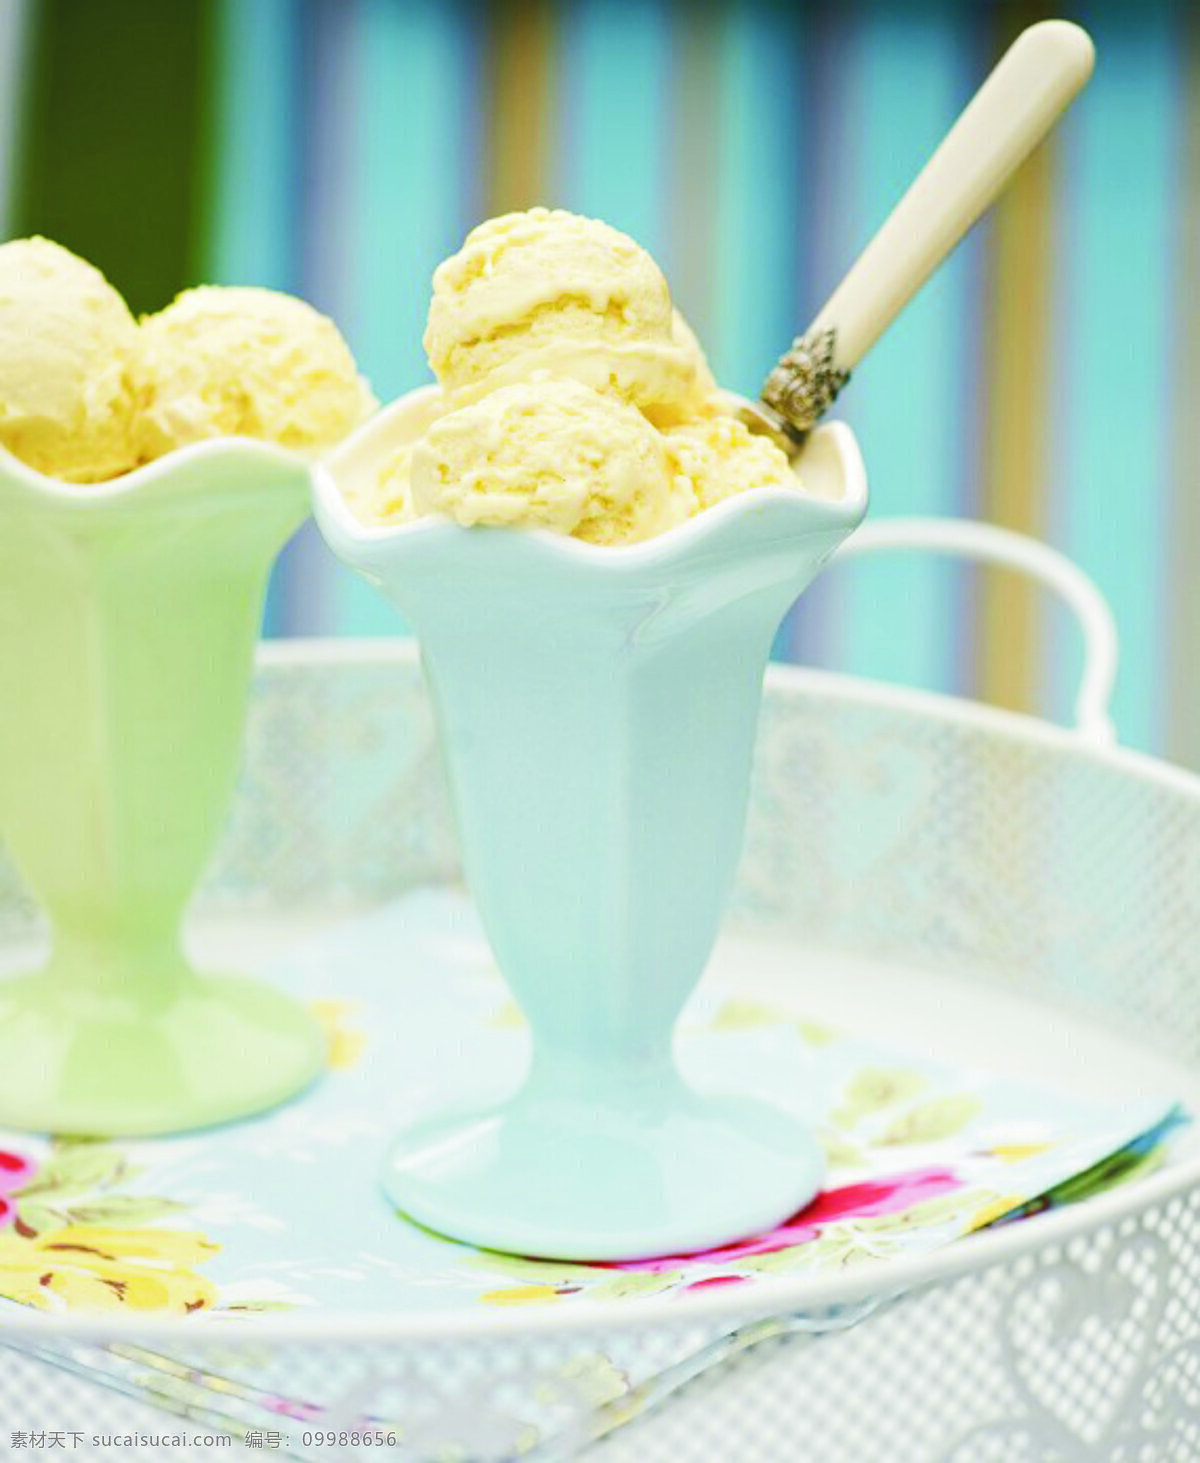 花式冰淇淋 花式 冰淇淋 奶油 香蕉汁 勺子 果盘 浅色杯子 蓝色 黄色 背景色 餐饮美食 西餐美食